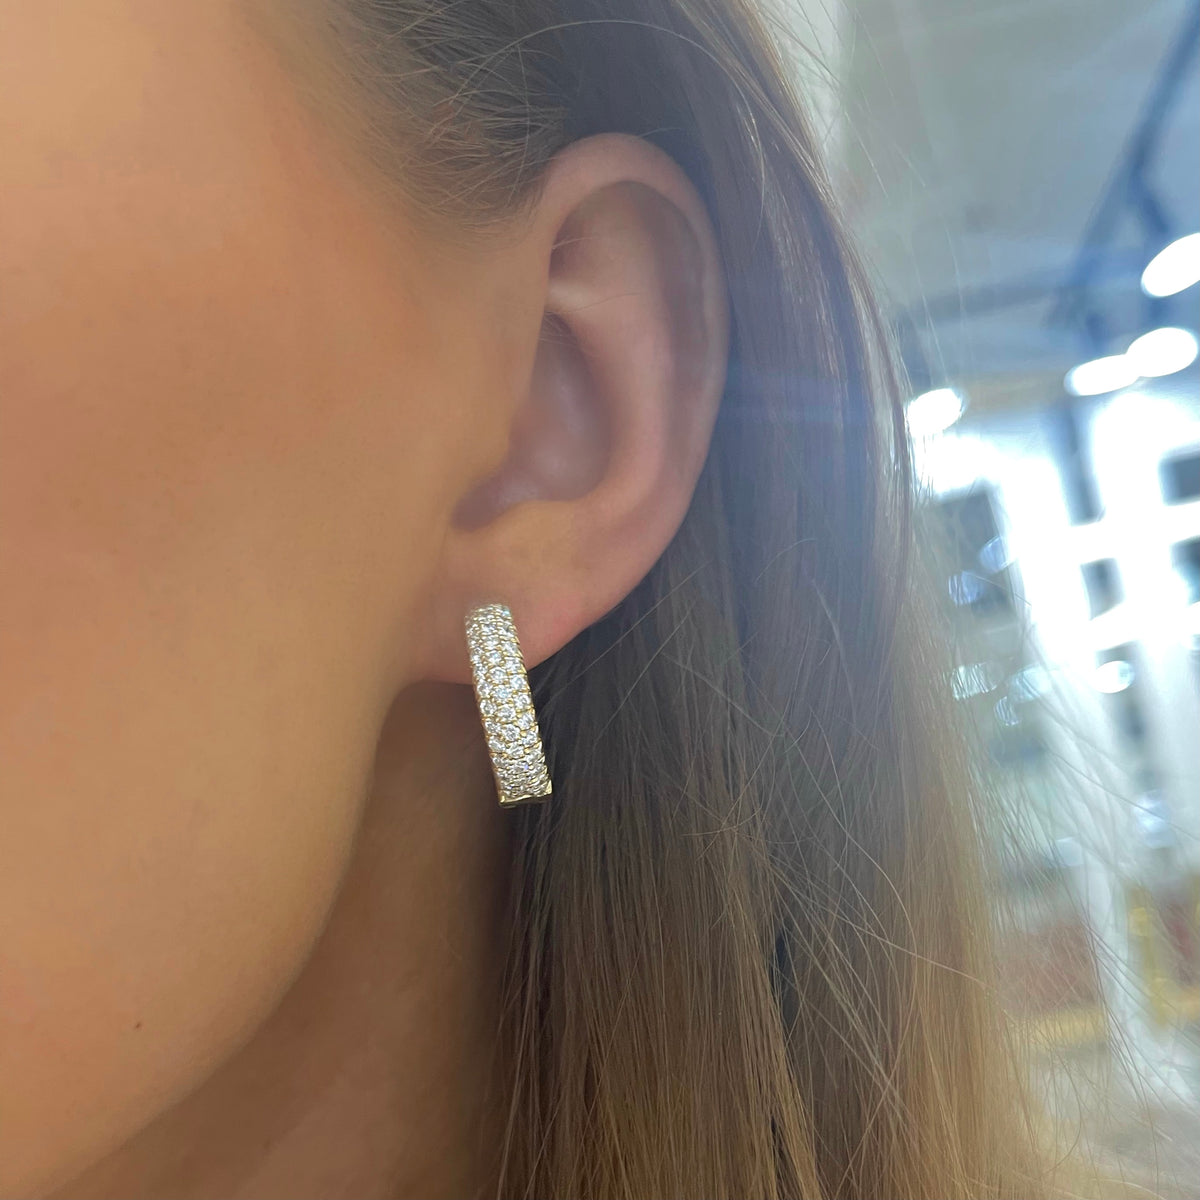 Naomi Pave Diamond Hoop Earrings 2.34 ctw